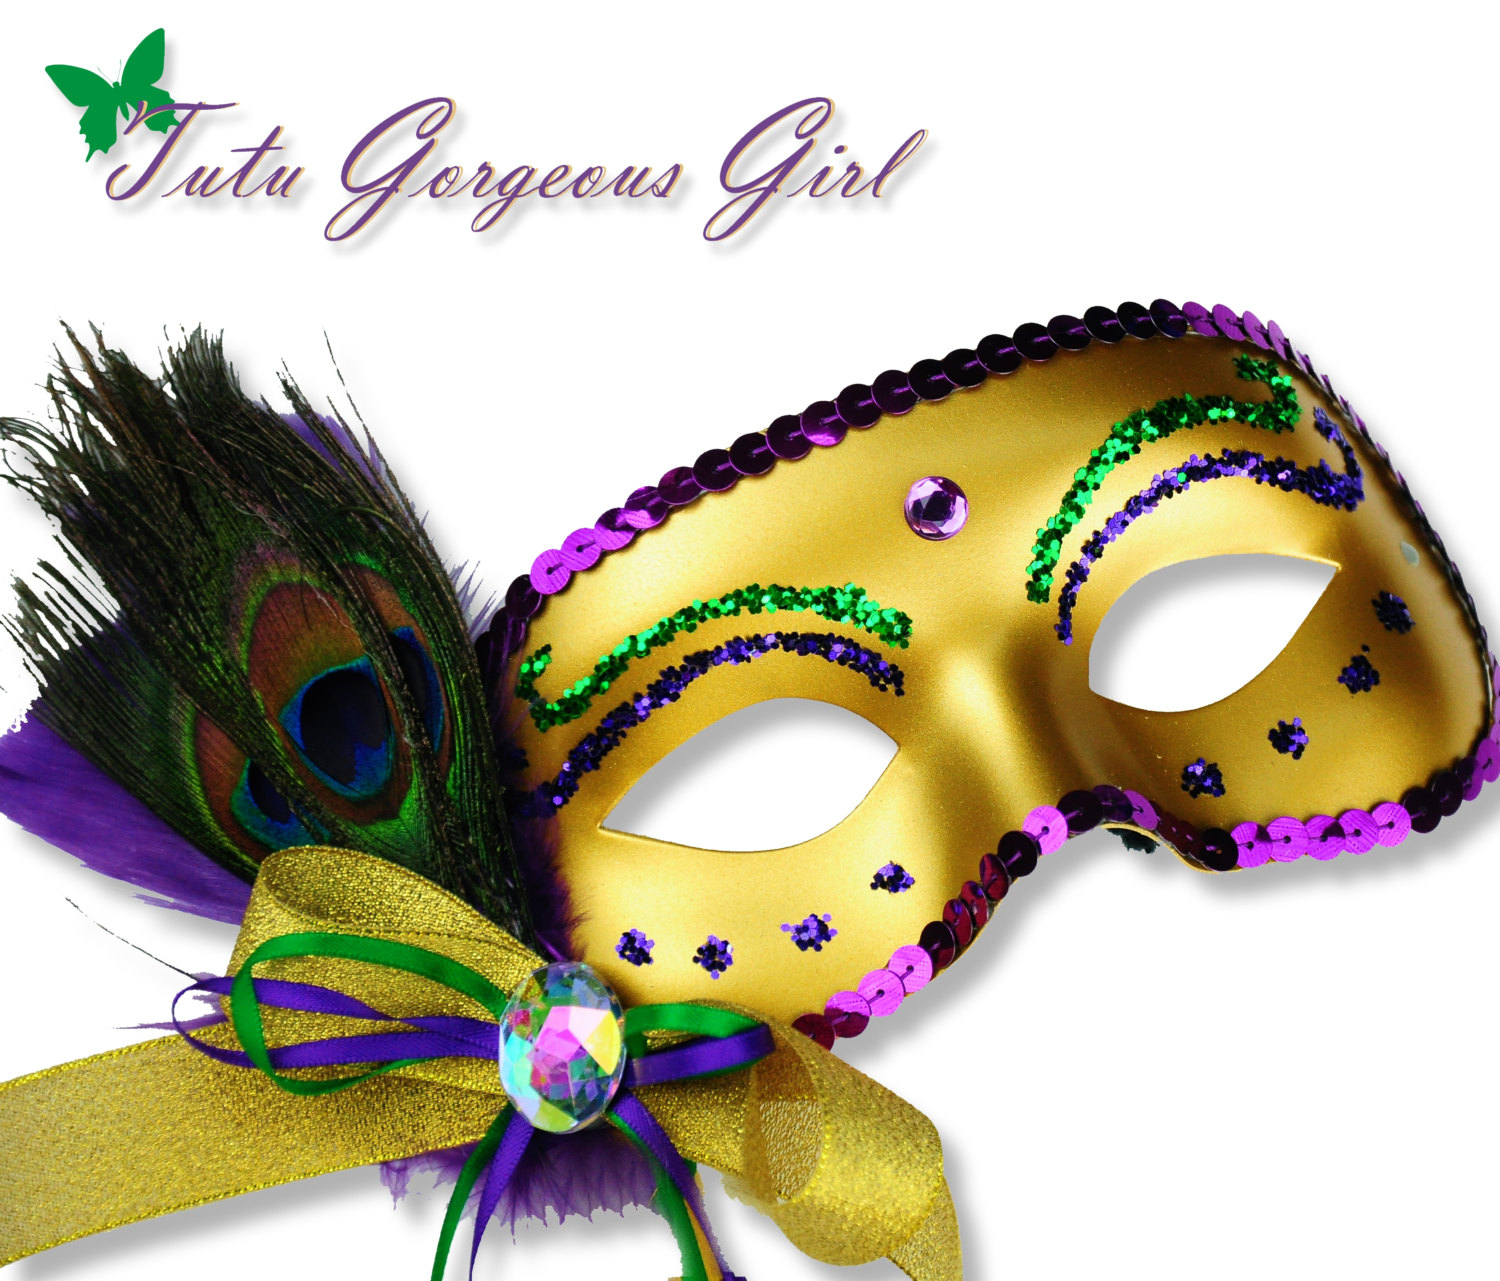 Free Mardi Gras Mask, Download Free Mardi Gras Mask png images, Free ...